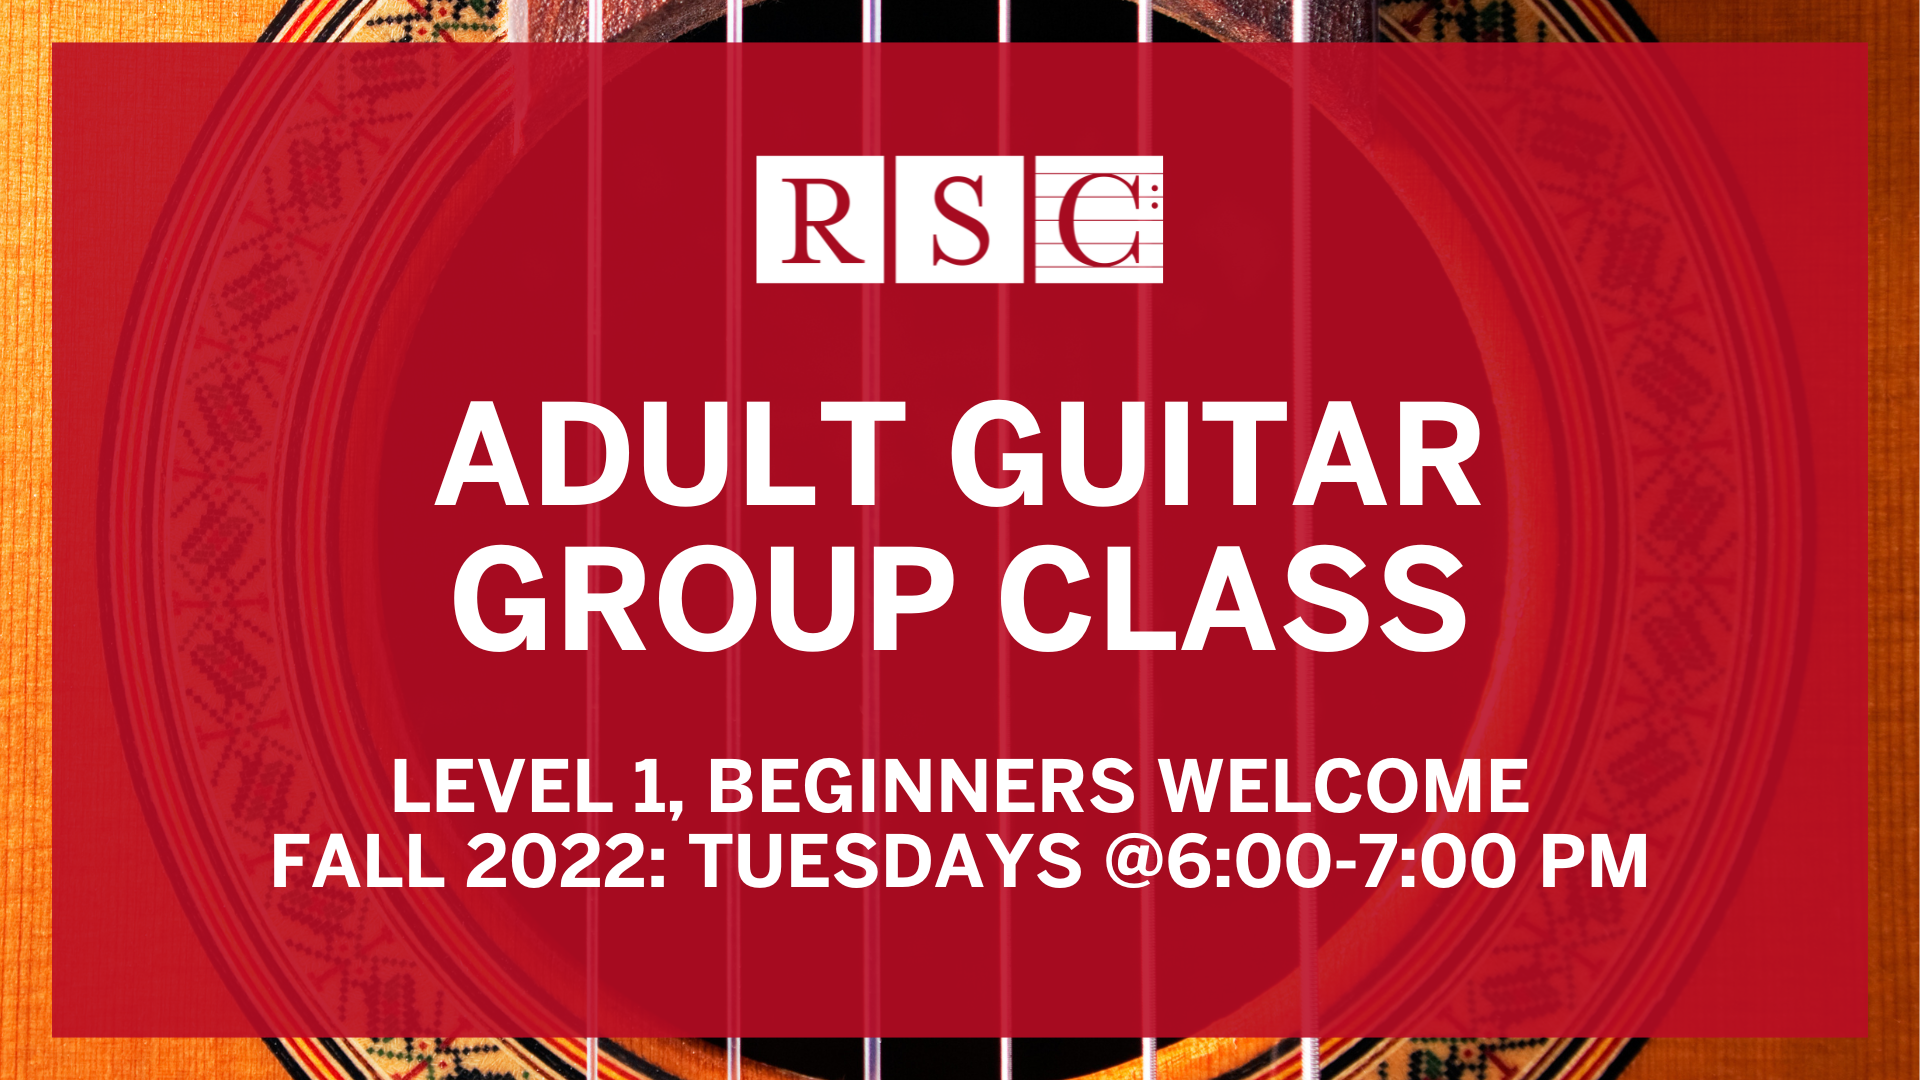 Adult Guitar Group Class